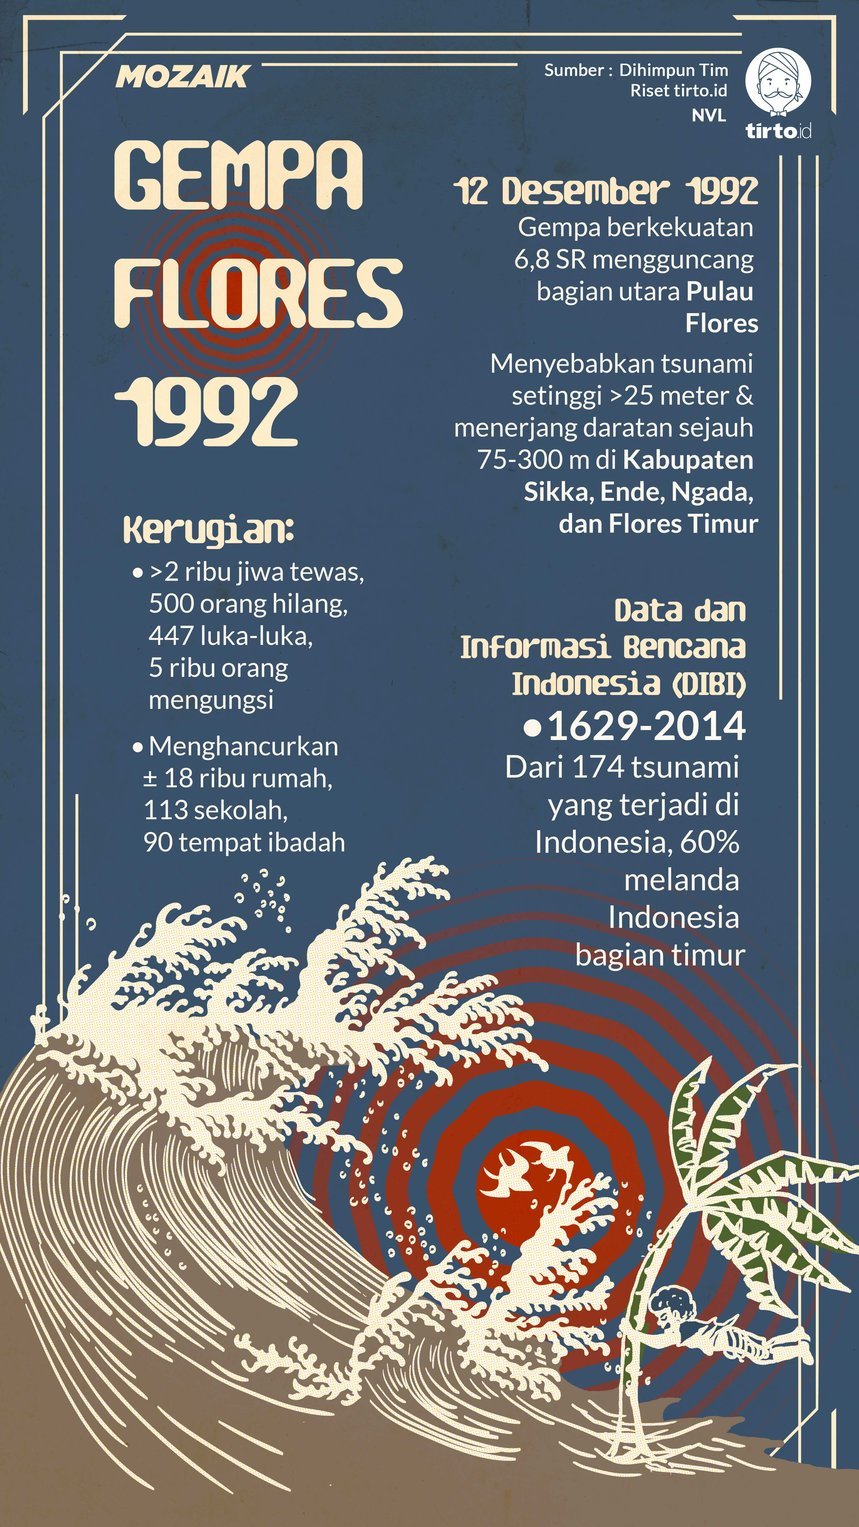 Infografik Mozaik Gempa Flores 1992